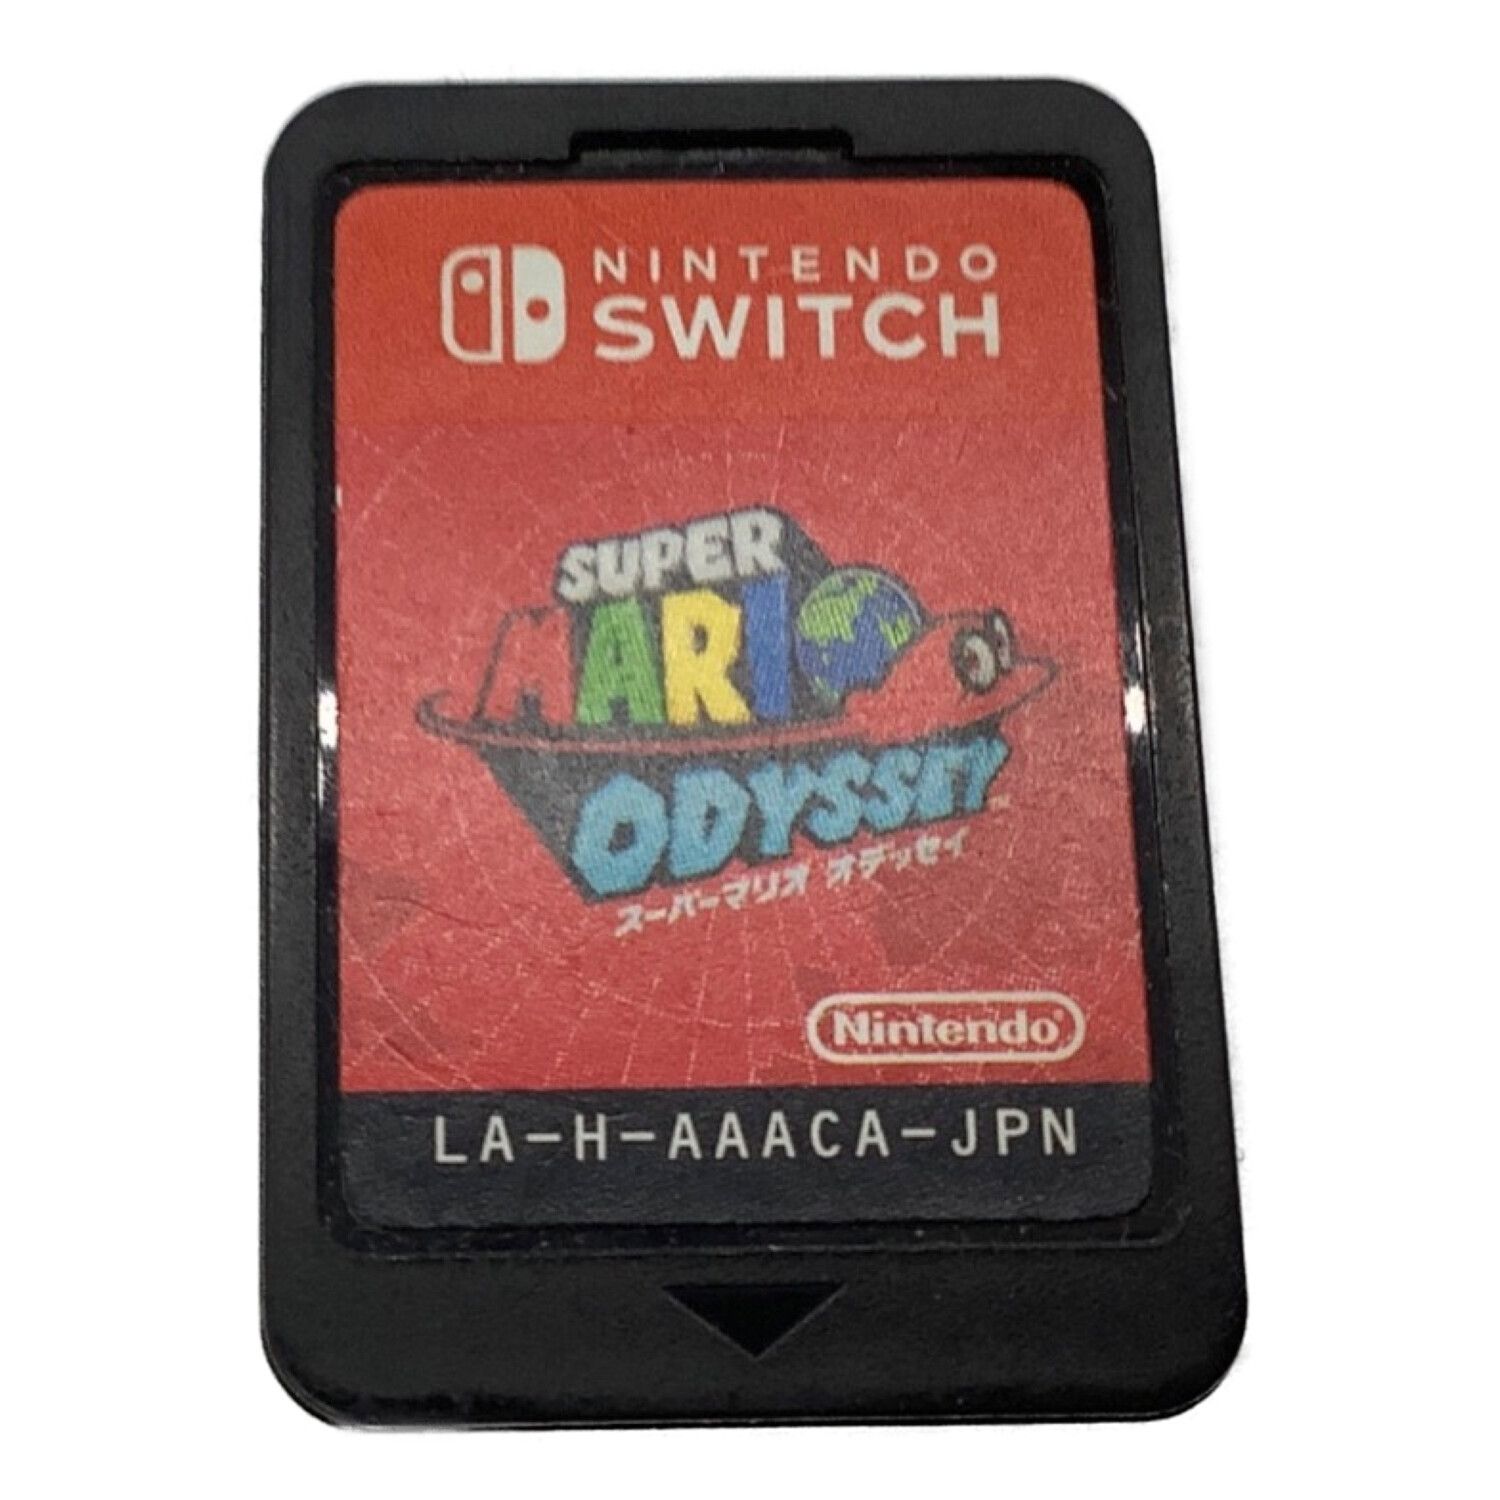 Nintendo (ニンテンドウ) Nintendo Switch用ソフト スーパーマリオオデッセイ 旅のガイドブック付き